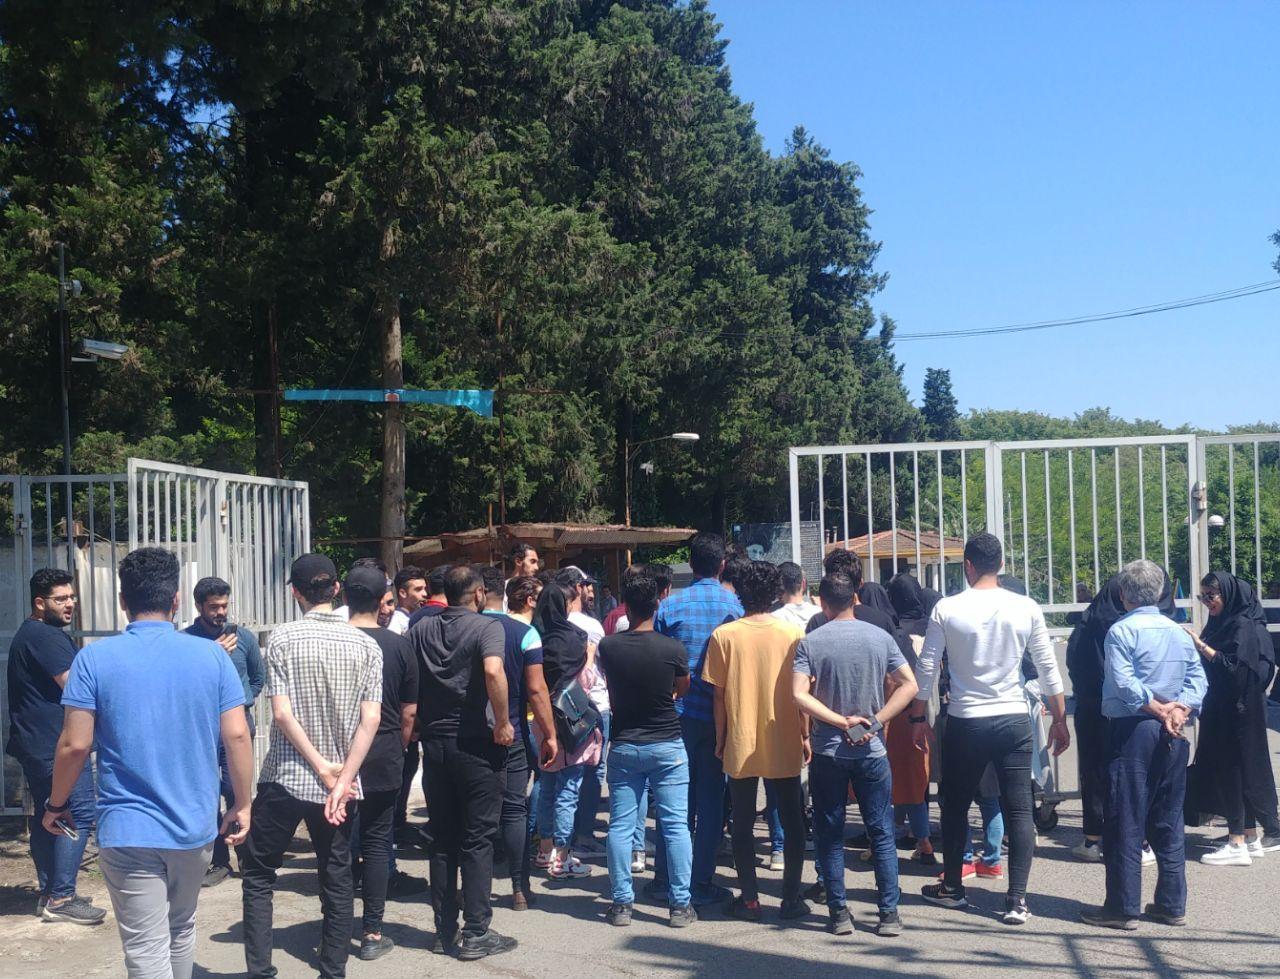 کارمندان و دانشجویان غیرانتفاعی شمال آمل در مقابل این دانشگاه تحصن کردند